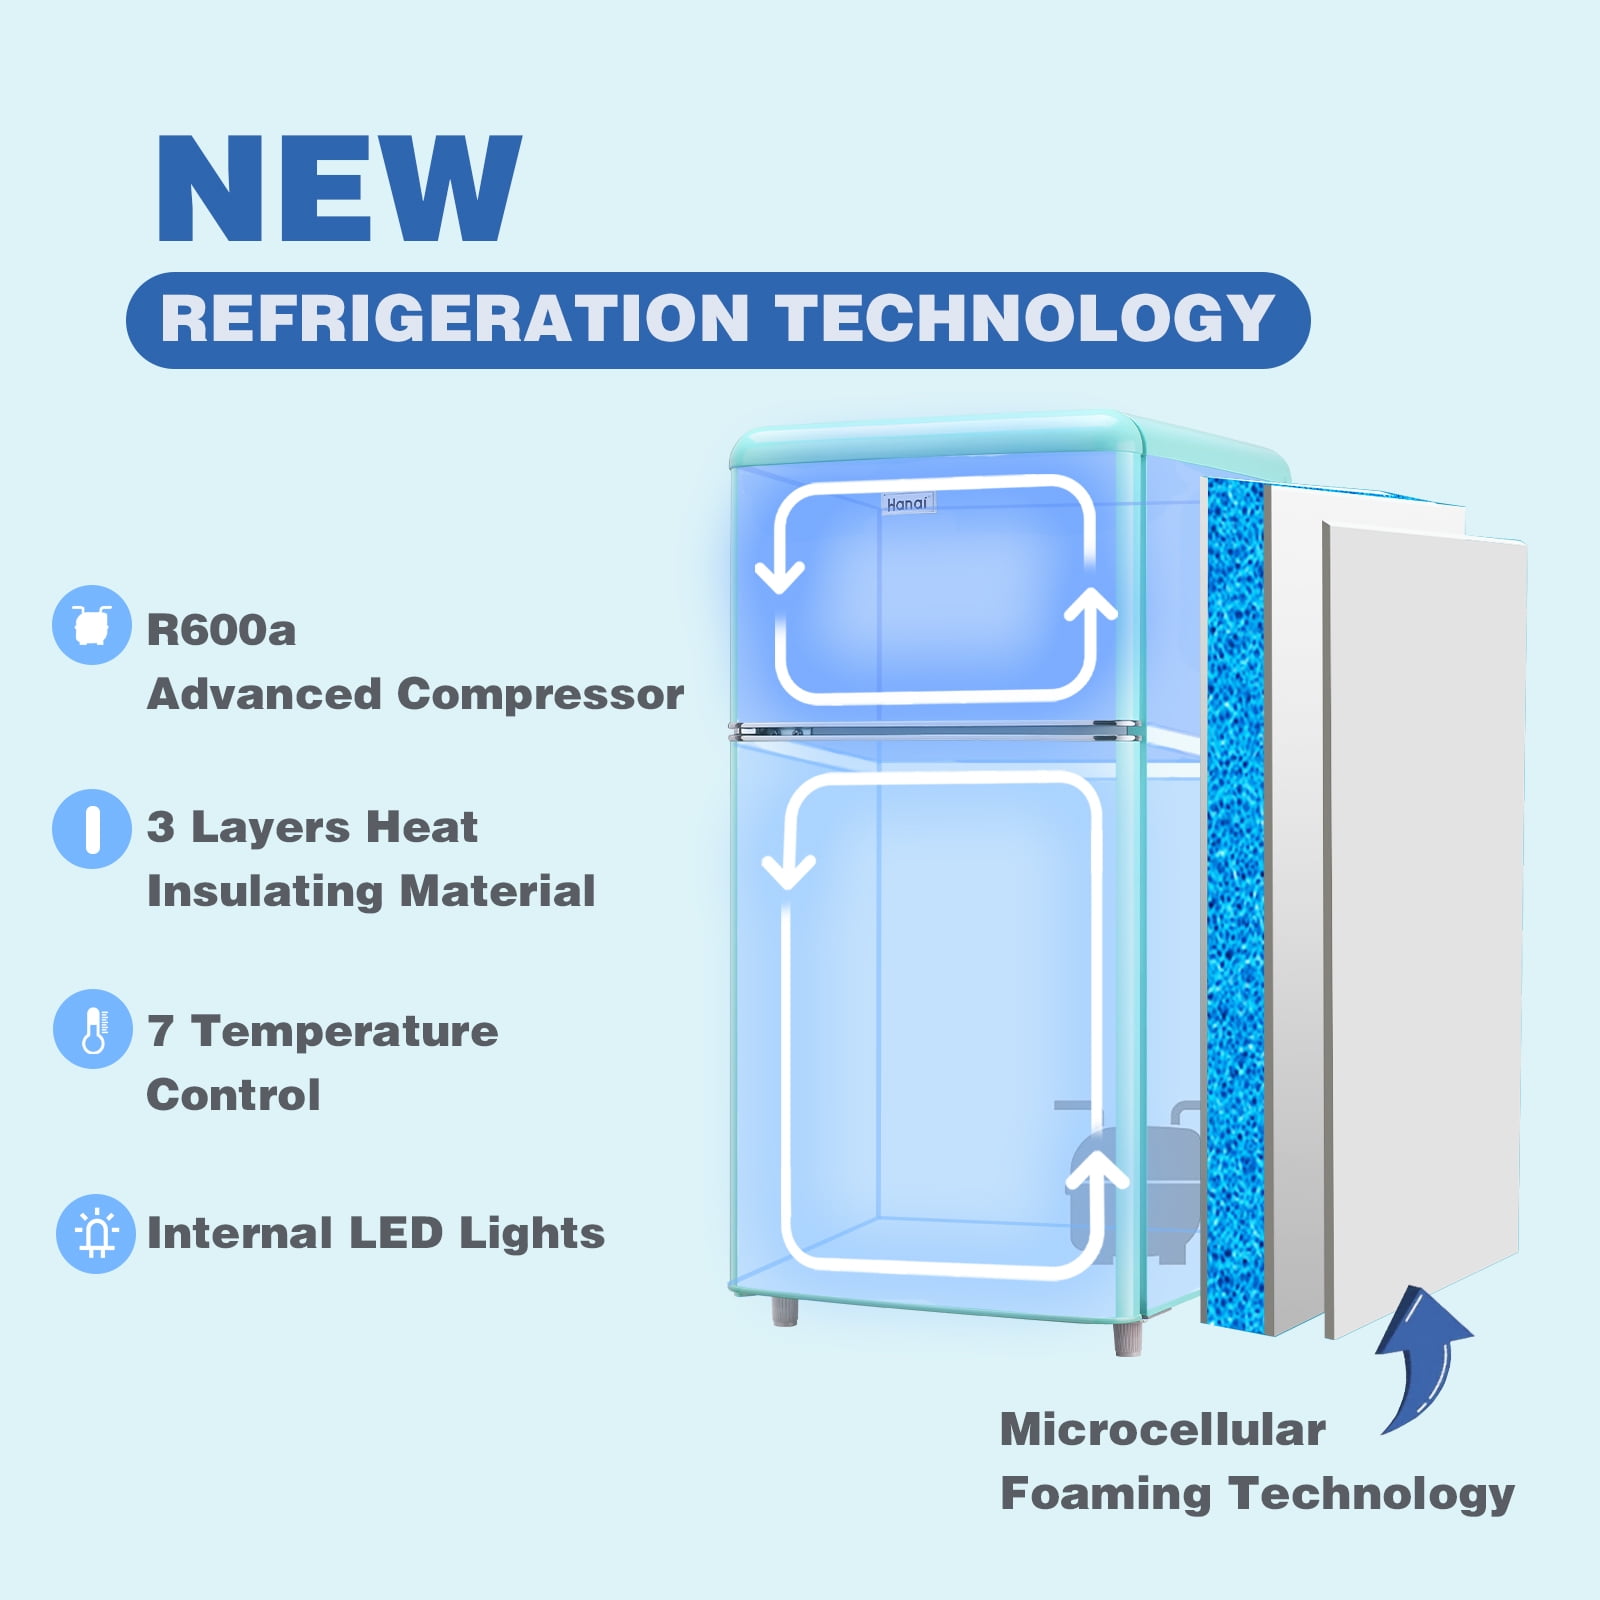 Tymyp Refrigerator, Small Fridge, Mini Fridges, Portable Refrigerator, Compact Refrigerator, Compact Fridge with Freezer 3.5 cu.ft, 7 Level